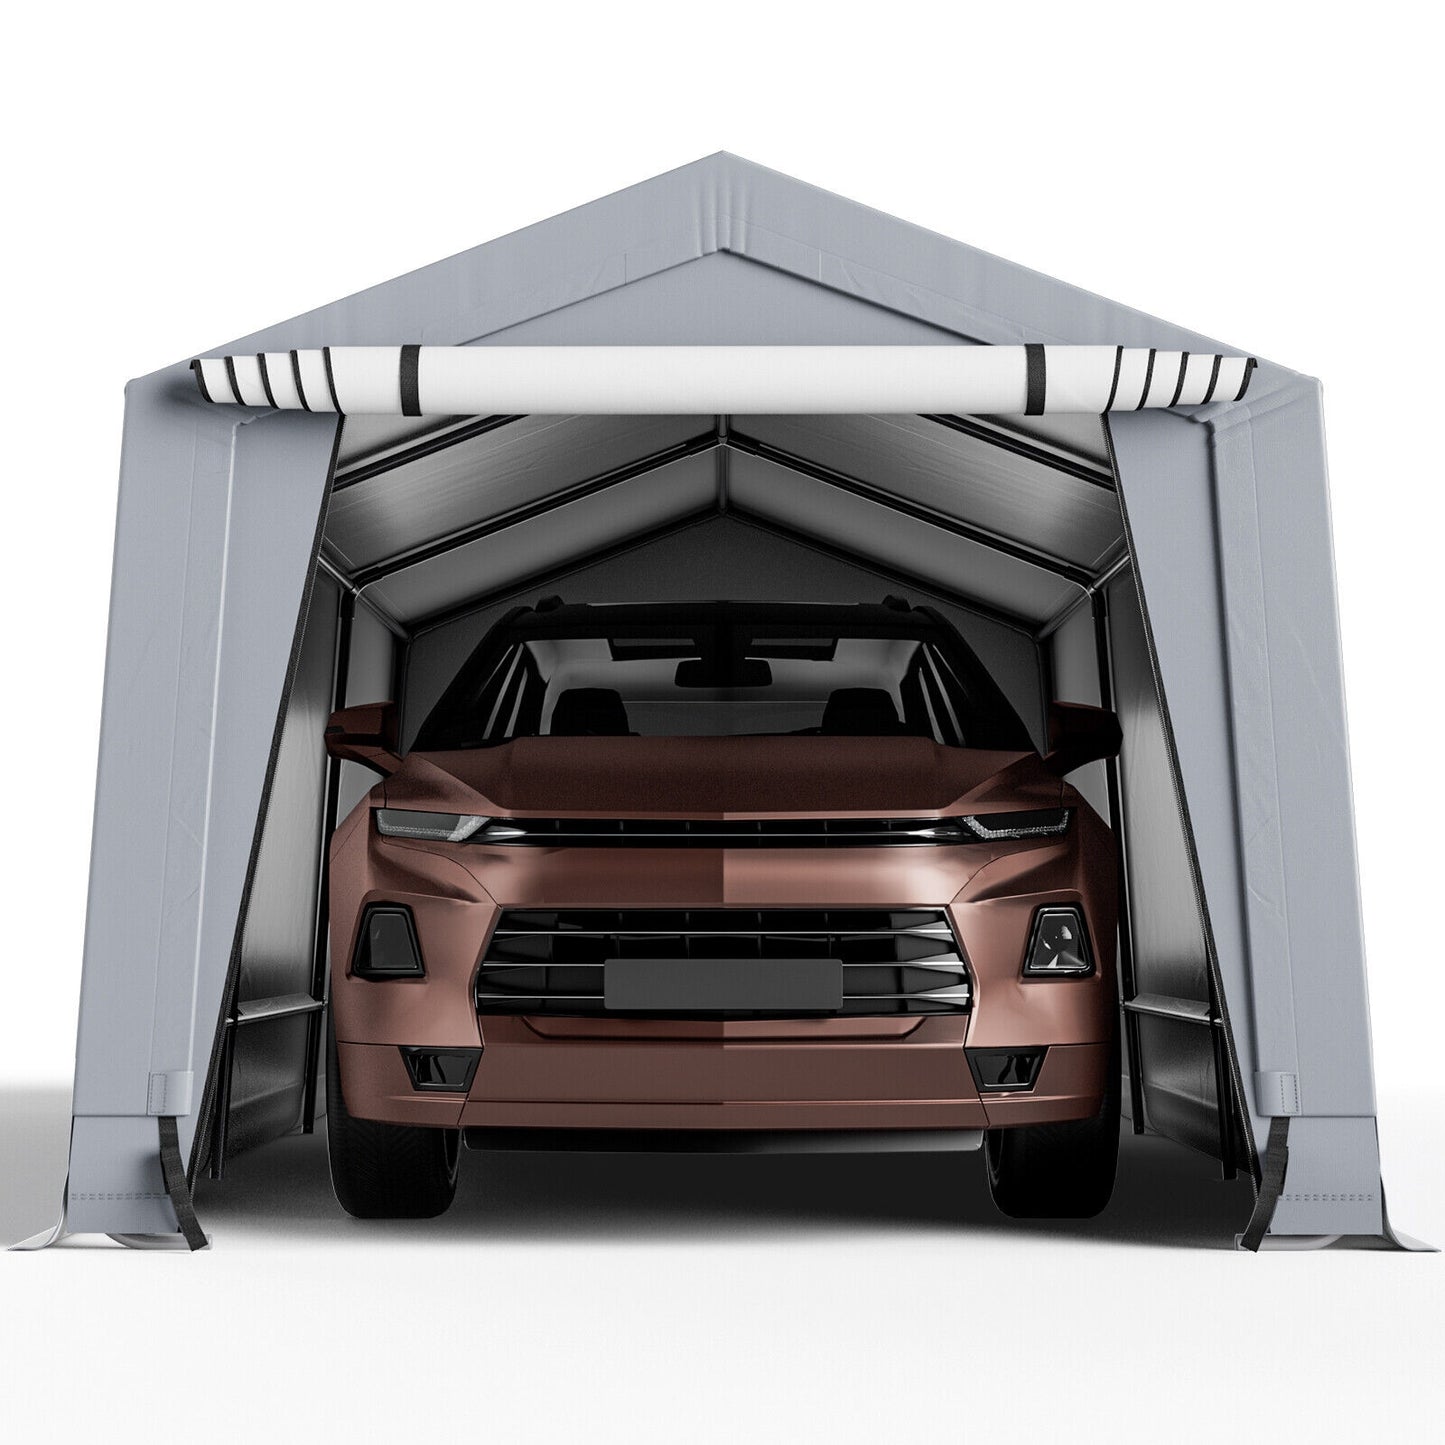 10 x 16/10 x 20 Feet Outdoor Heavy-Duty Carport with 2 Doors-10 x 20 ft